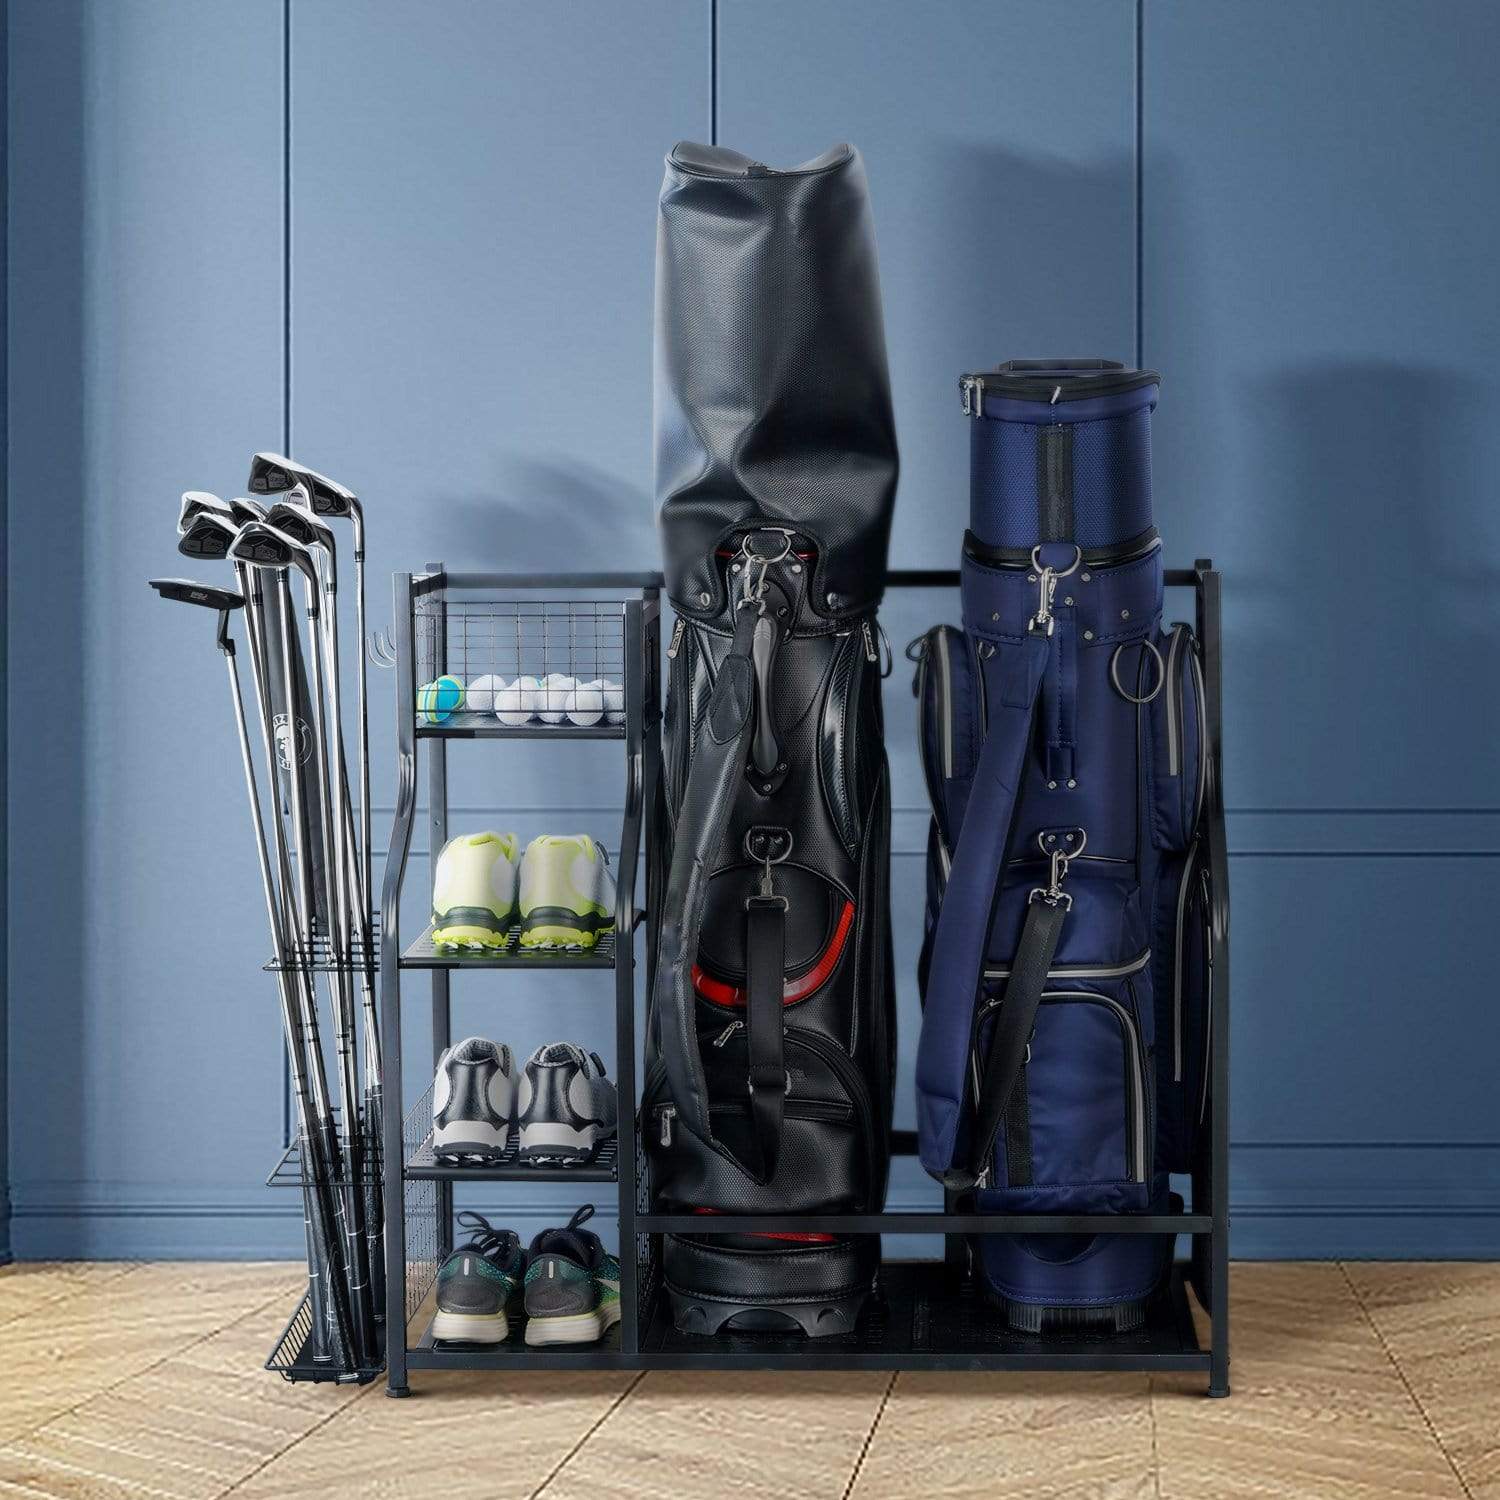 Mythinglogic Golf Storage Garage Organizer Queen Size